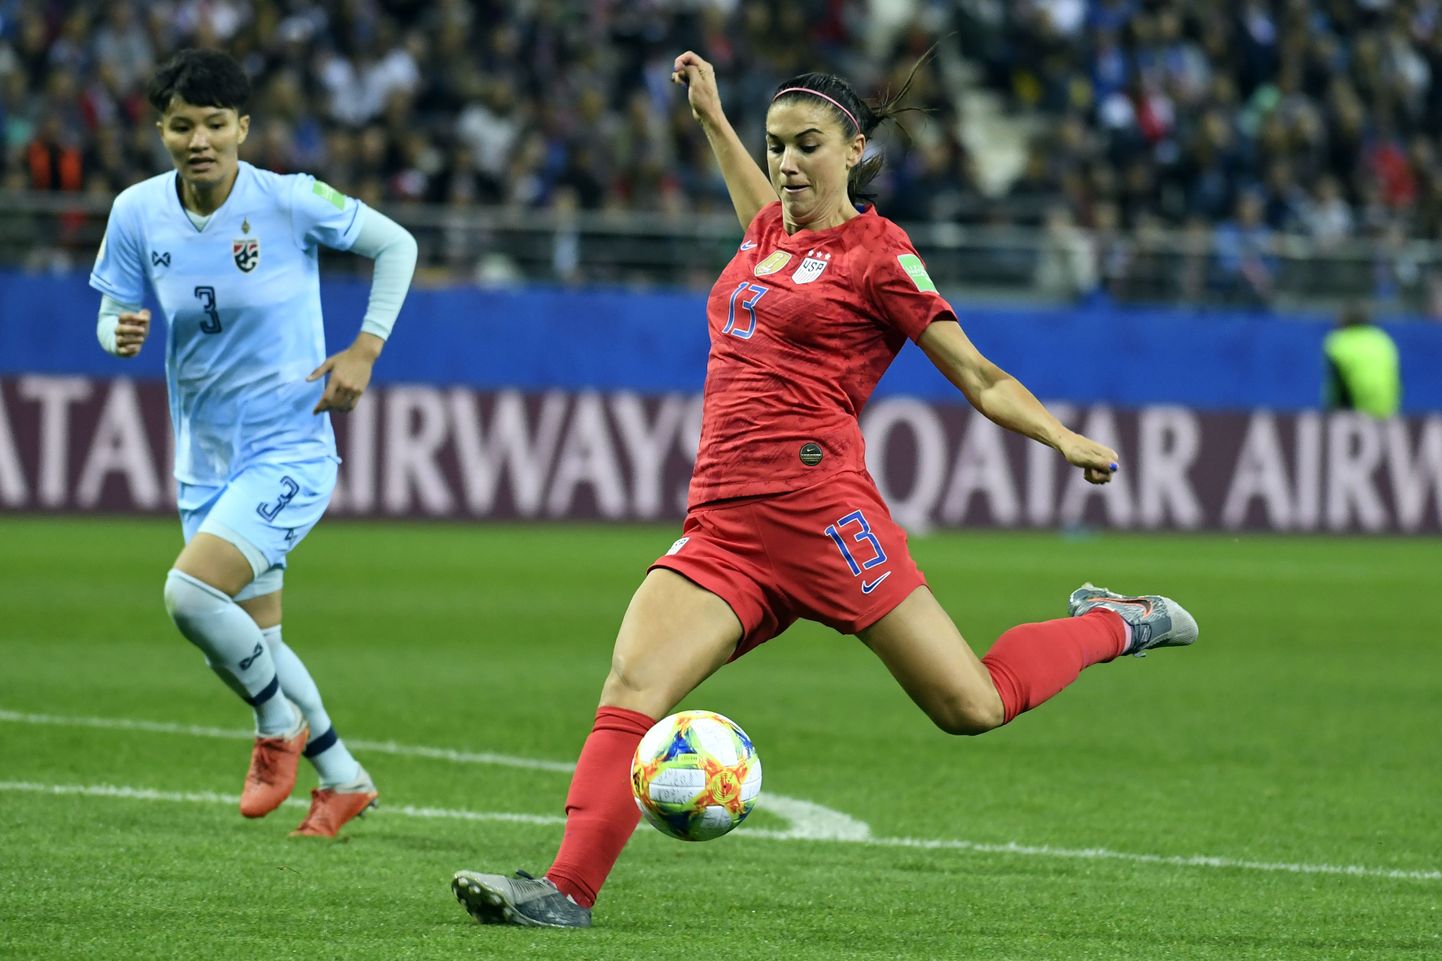 Ameeriklanna Alex Morgan lõi Prantsusmaal toimuval naiste jalgpalli MM-il Tai vastu viis väravat.